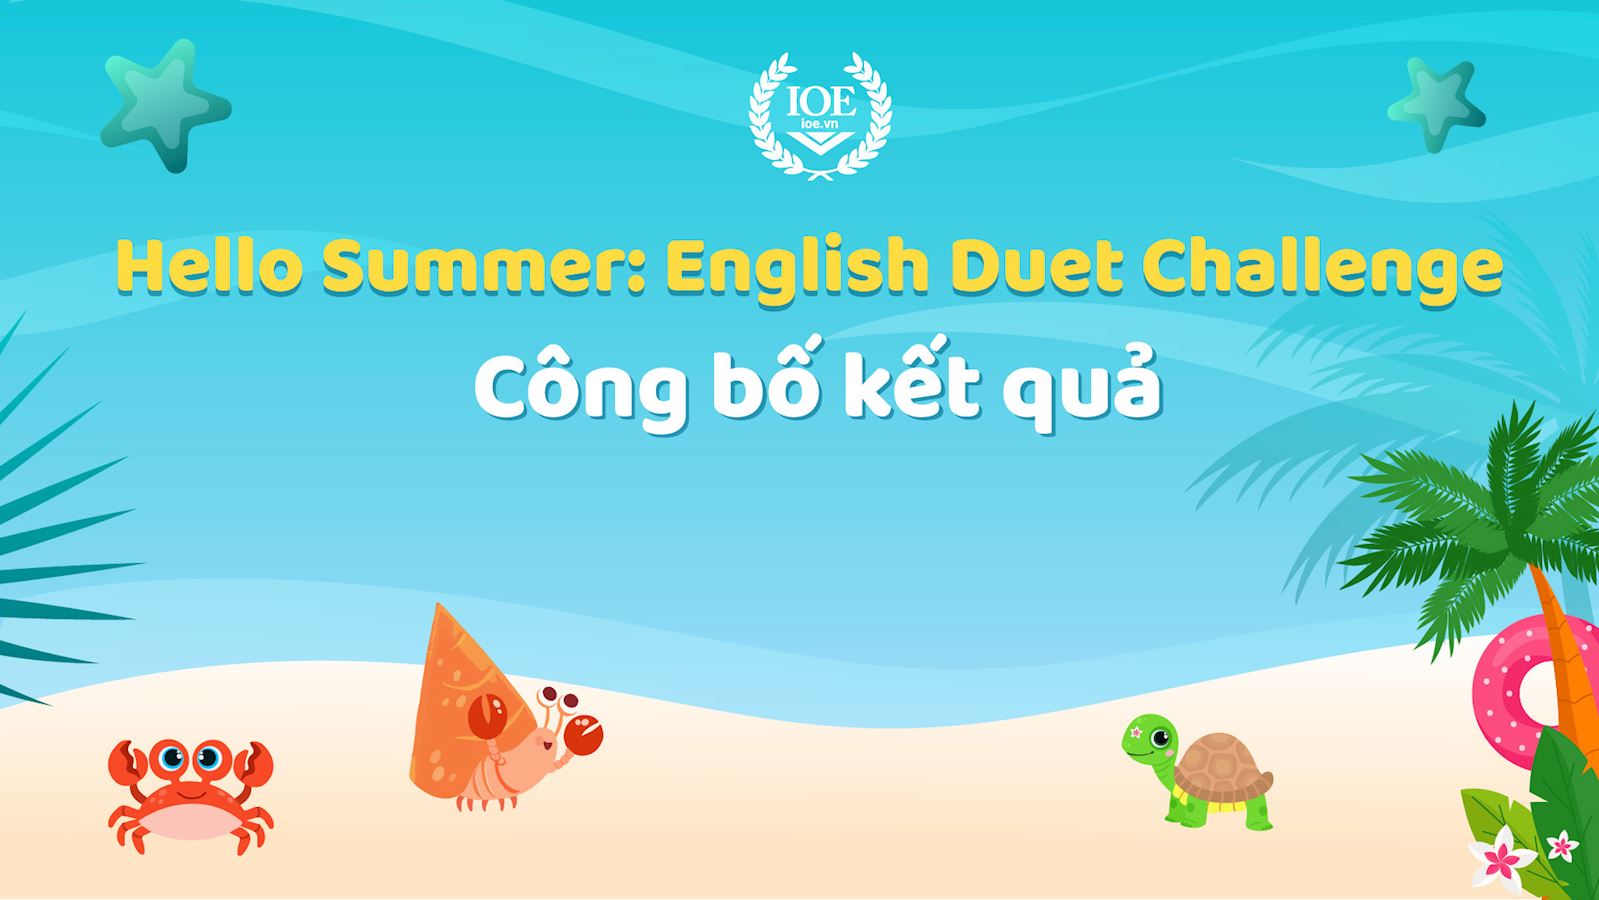 Công bố kết quả sự kiện "Hello Summer: English Duet Challenge"